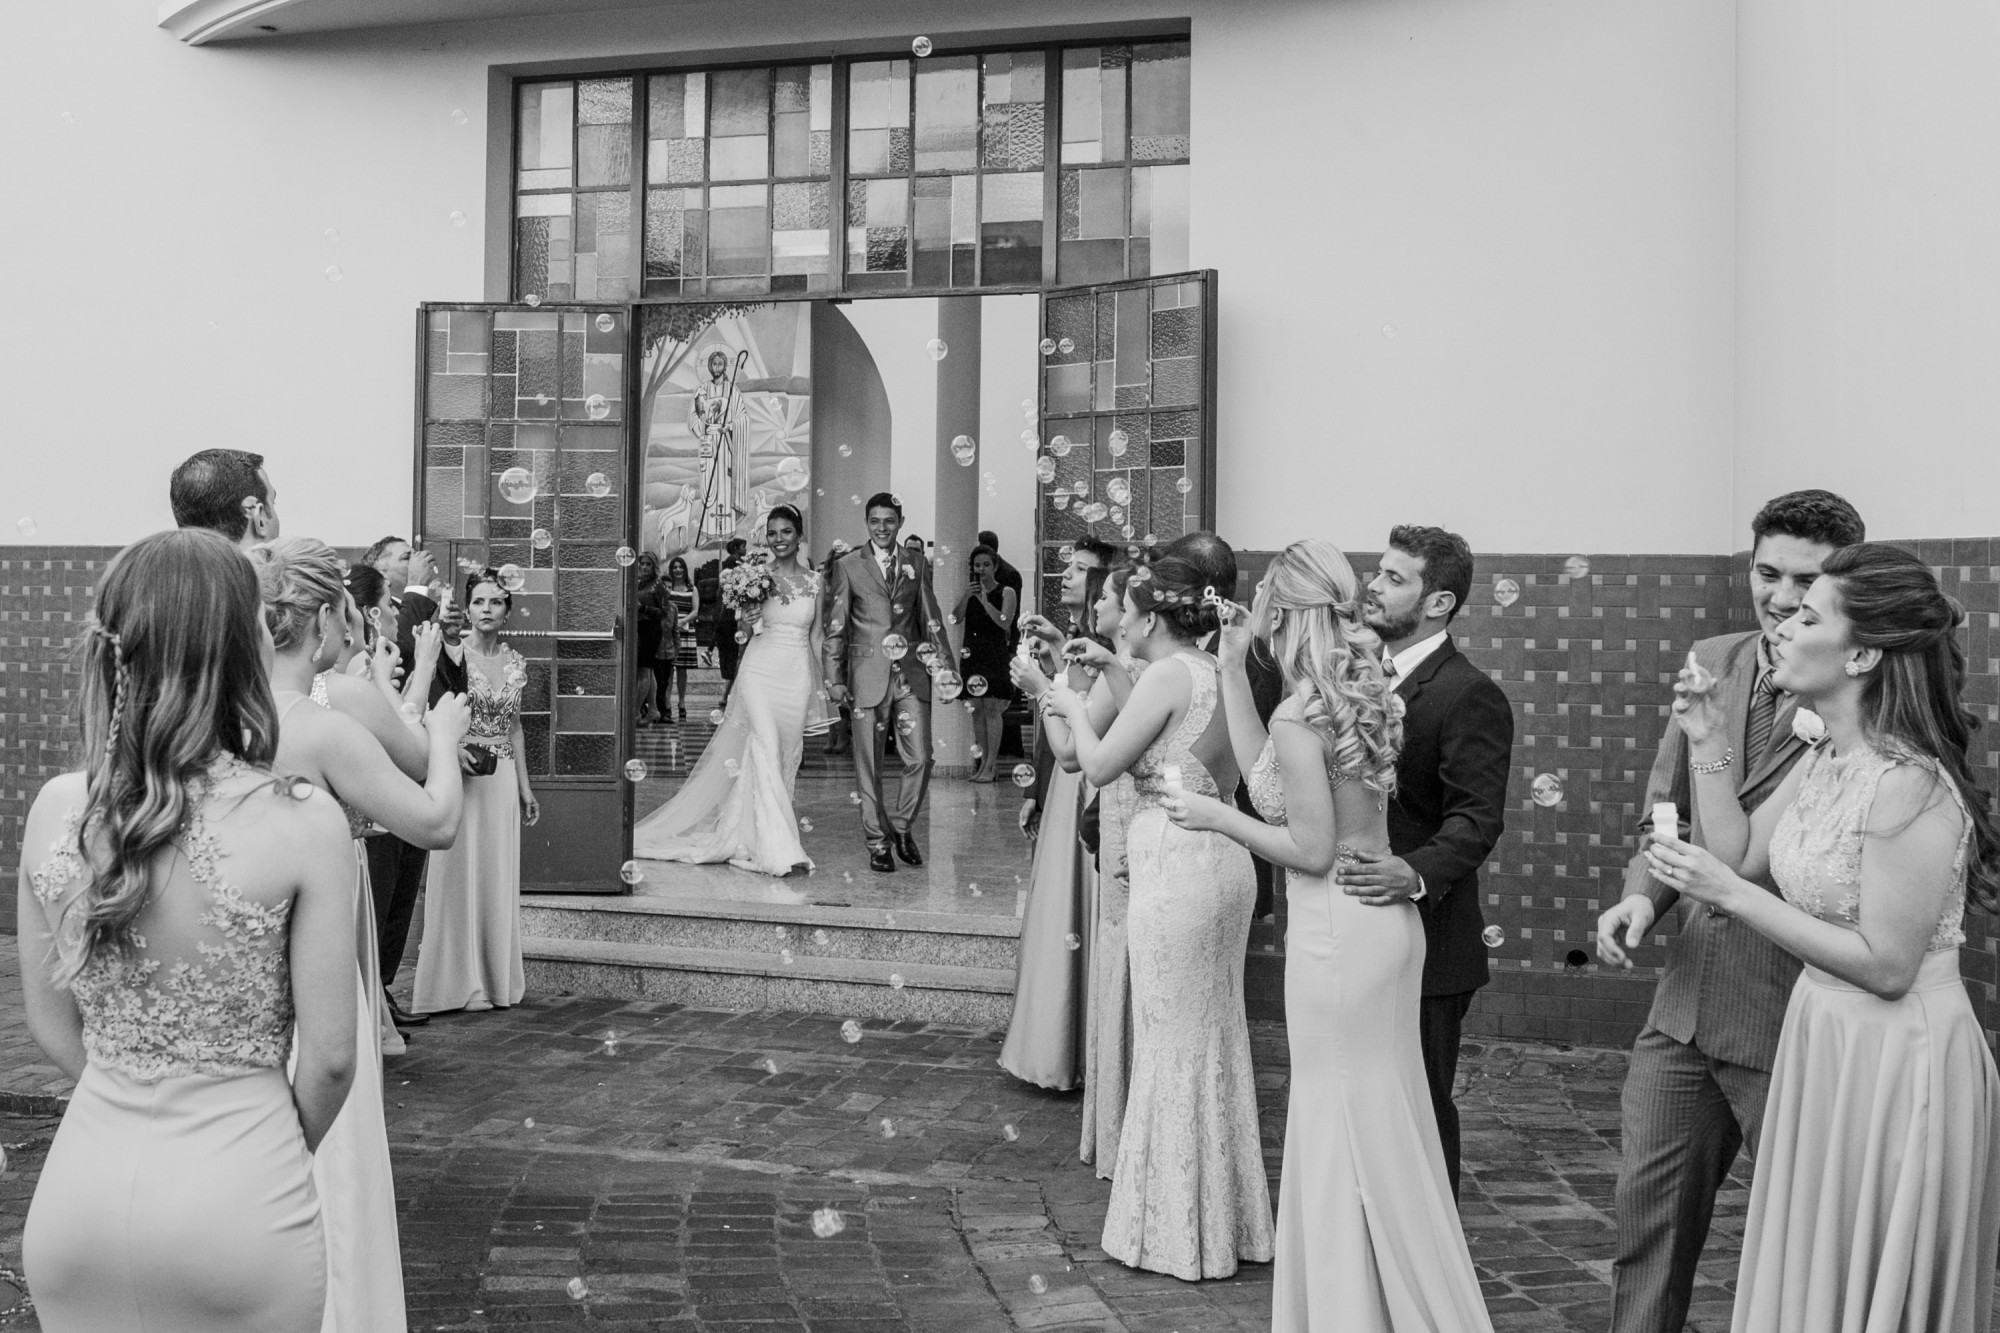 Casamento Camila Rampim e Rafael em Terra Roxa - Paraná - por Lorran Souza e Léia Sotile - fotografos de casamentos - 40